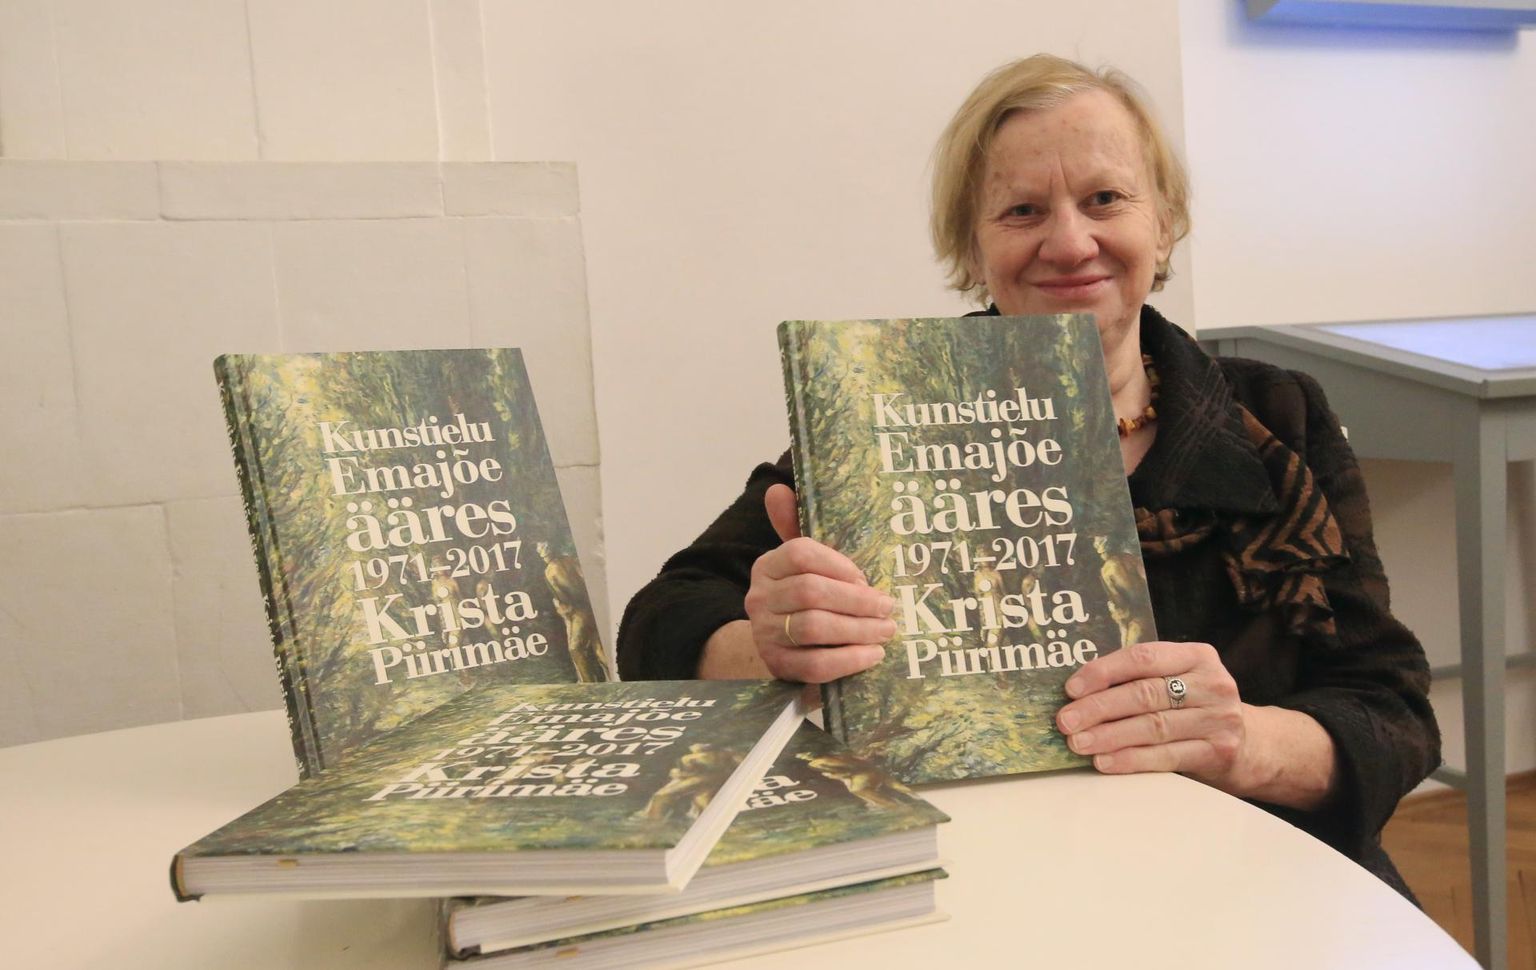 Tartu ülikooli muuseumi valges saalis esitles Krista Piirimäe oma raamatut «Kunstielu Emajõe ääres».
 